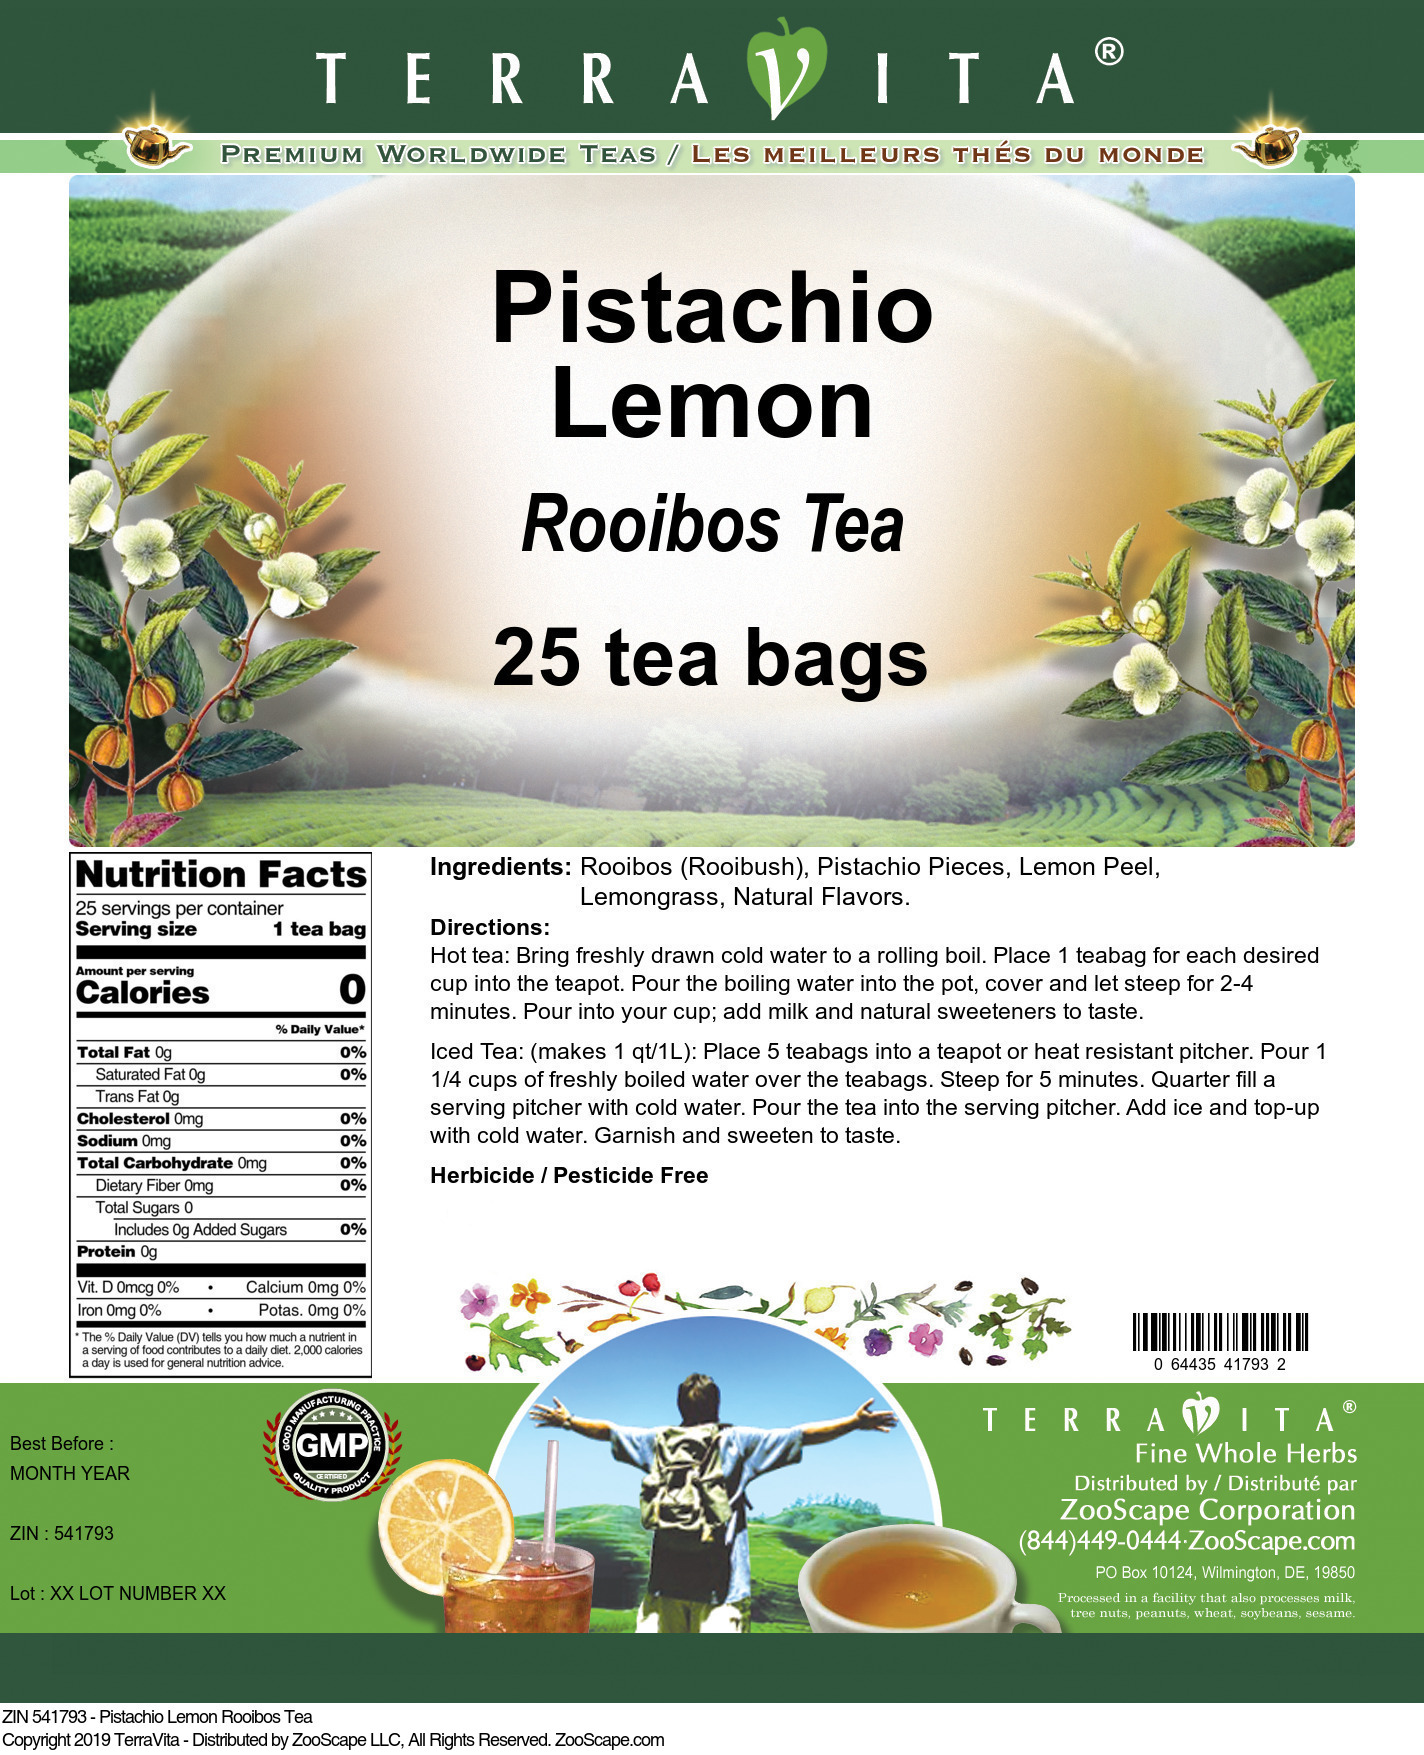 Pistachio Lemon Rooibos Tea - Label